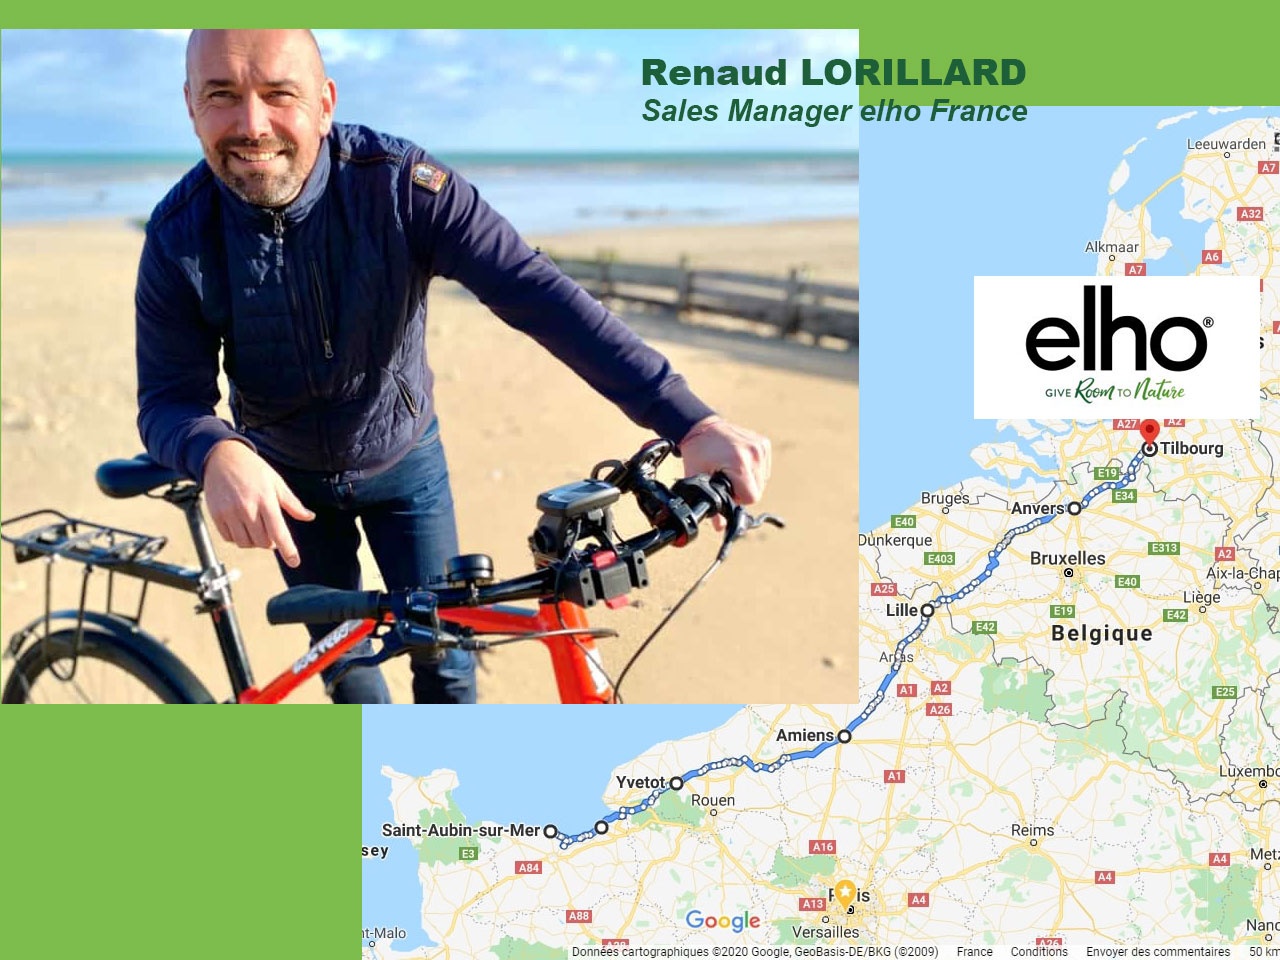 Elho : Laissez la voiture au garage et soutenez le défi de Renaud LORILLARD (Sales Manager Elho France) 